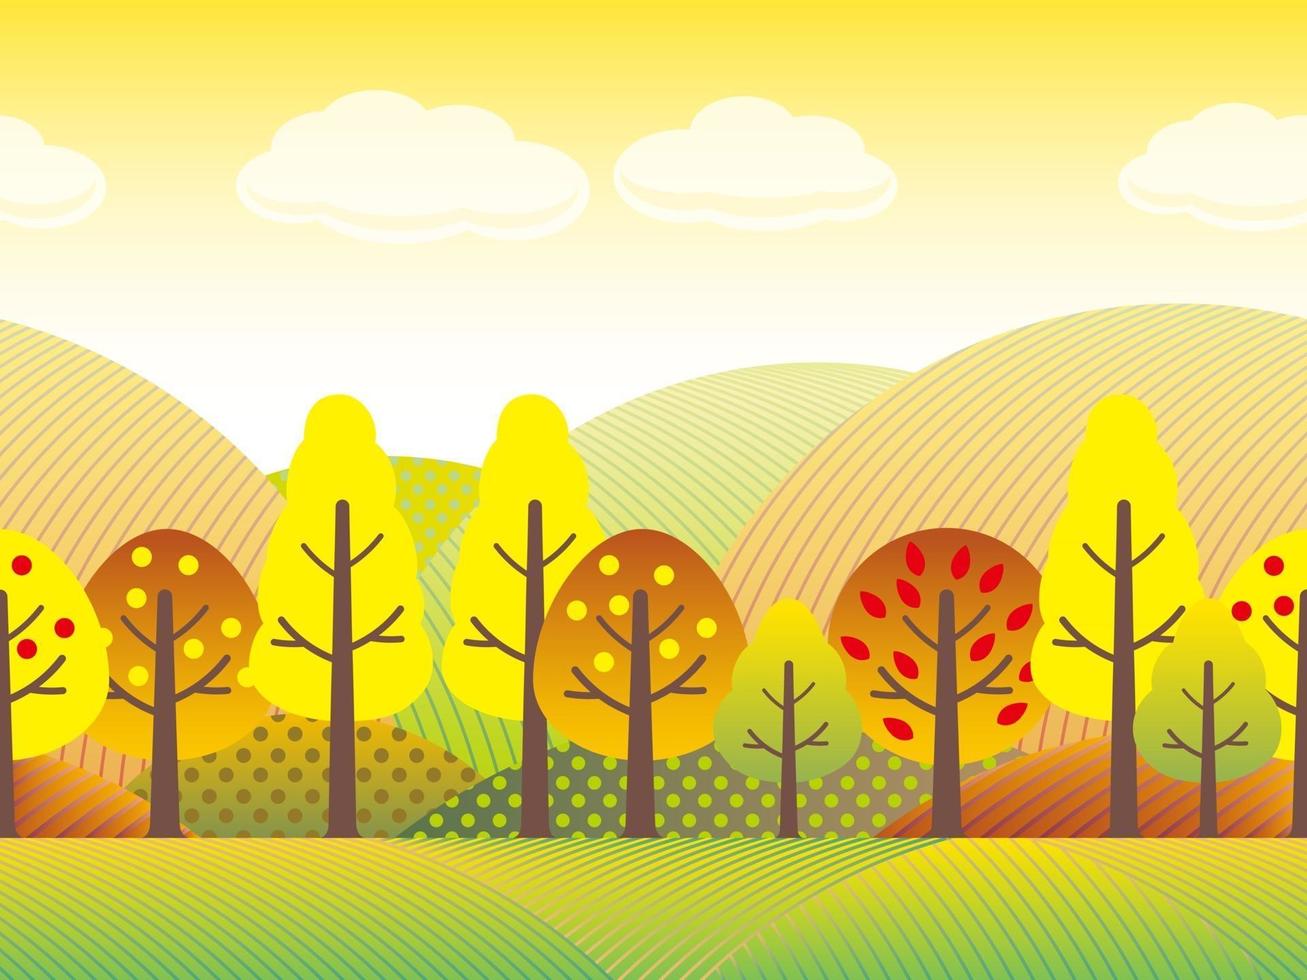 sömlöst höstlandsbygdlandskap med träd, gräsmark och kullar i höstfärger. vektor illustration. kan repeteras horisontellt.